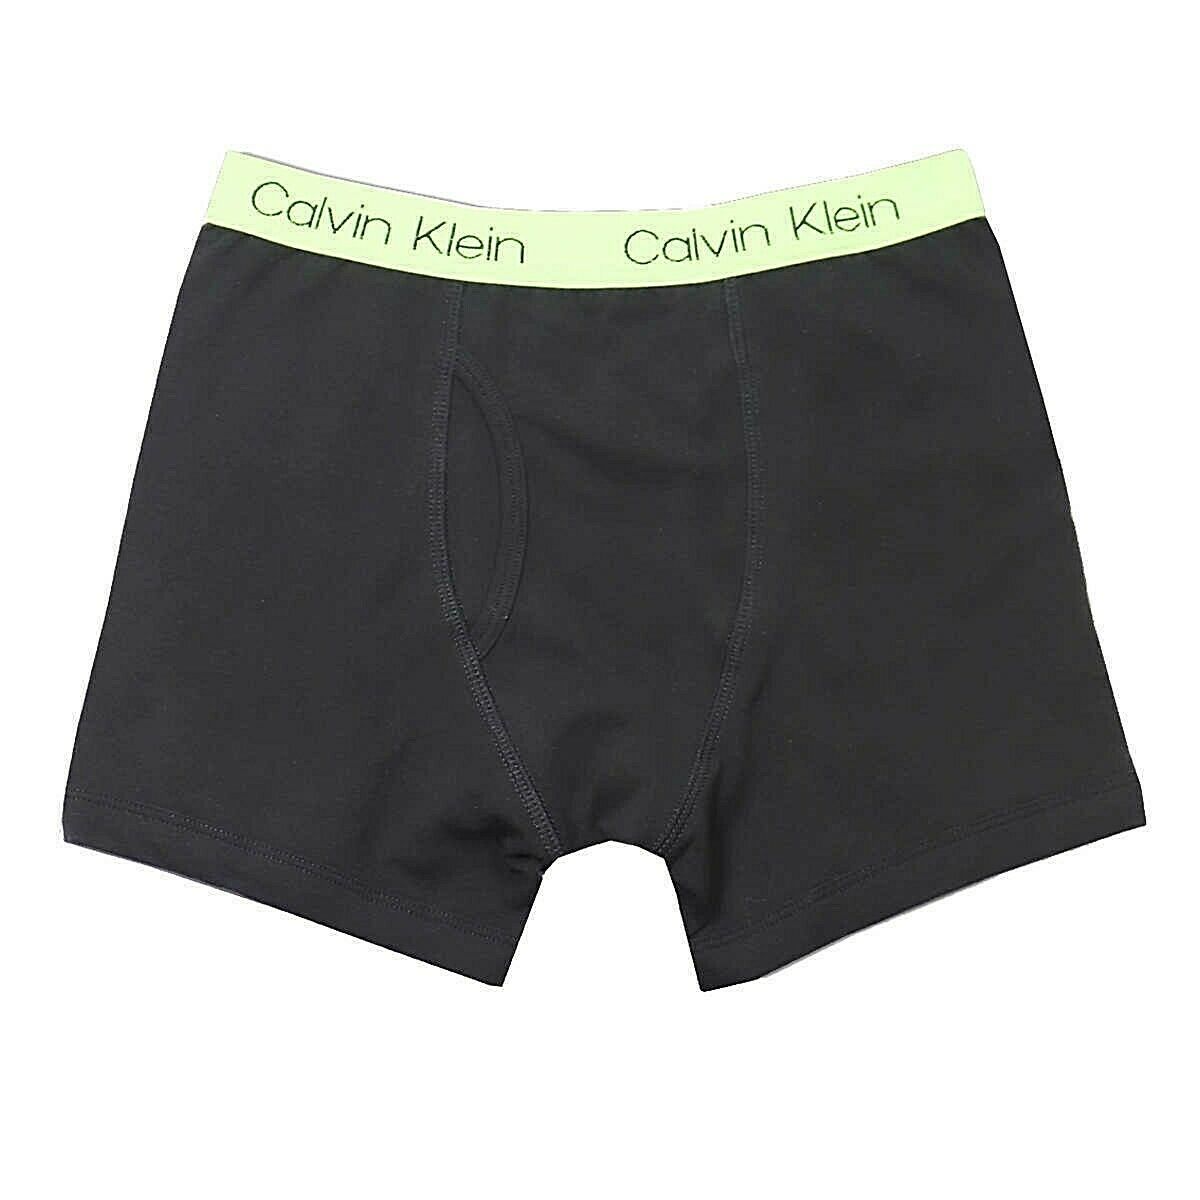 Calvin Klein Boys Boxer Brief Cotton Stretch Underwear, Large (6 Pack)